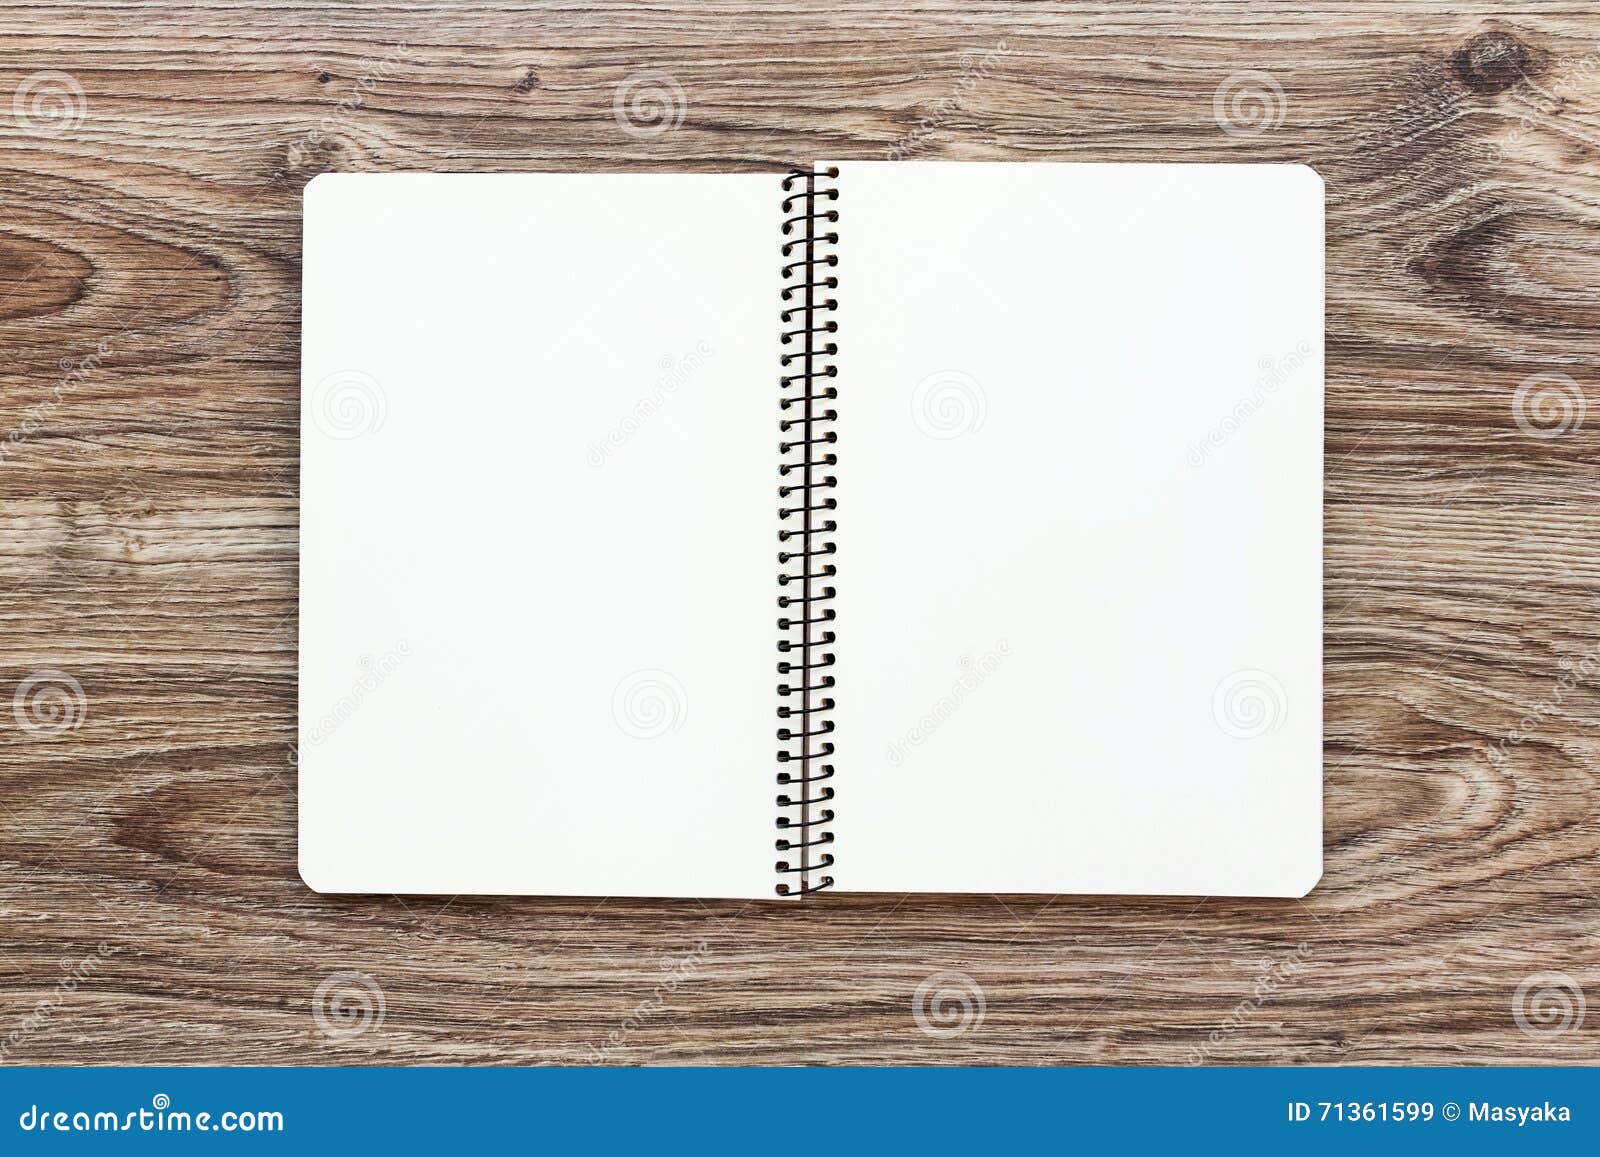 Modello Del Blocco Note Aperto Con Le Pagine in Bianco Su Fondo Di Legno  Immagine Stock - Immagine di nota, disegno: 71361599